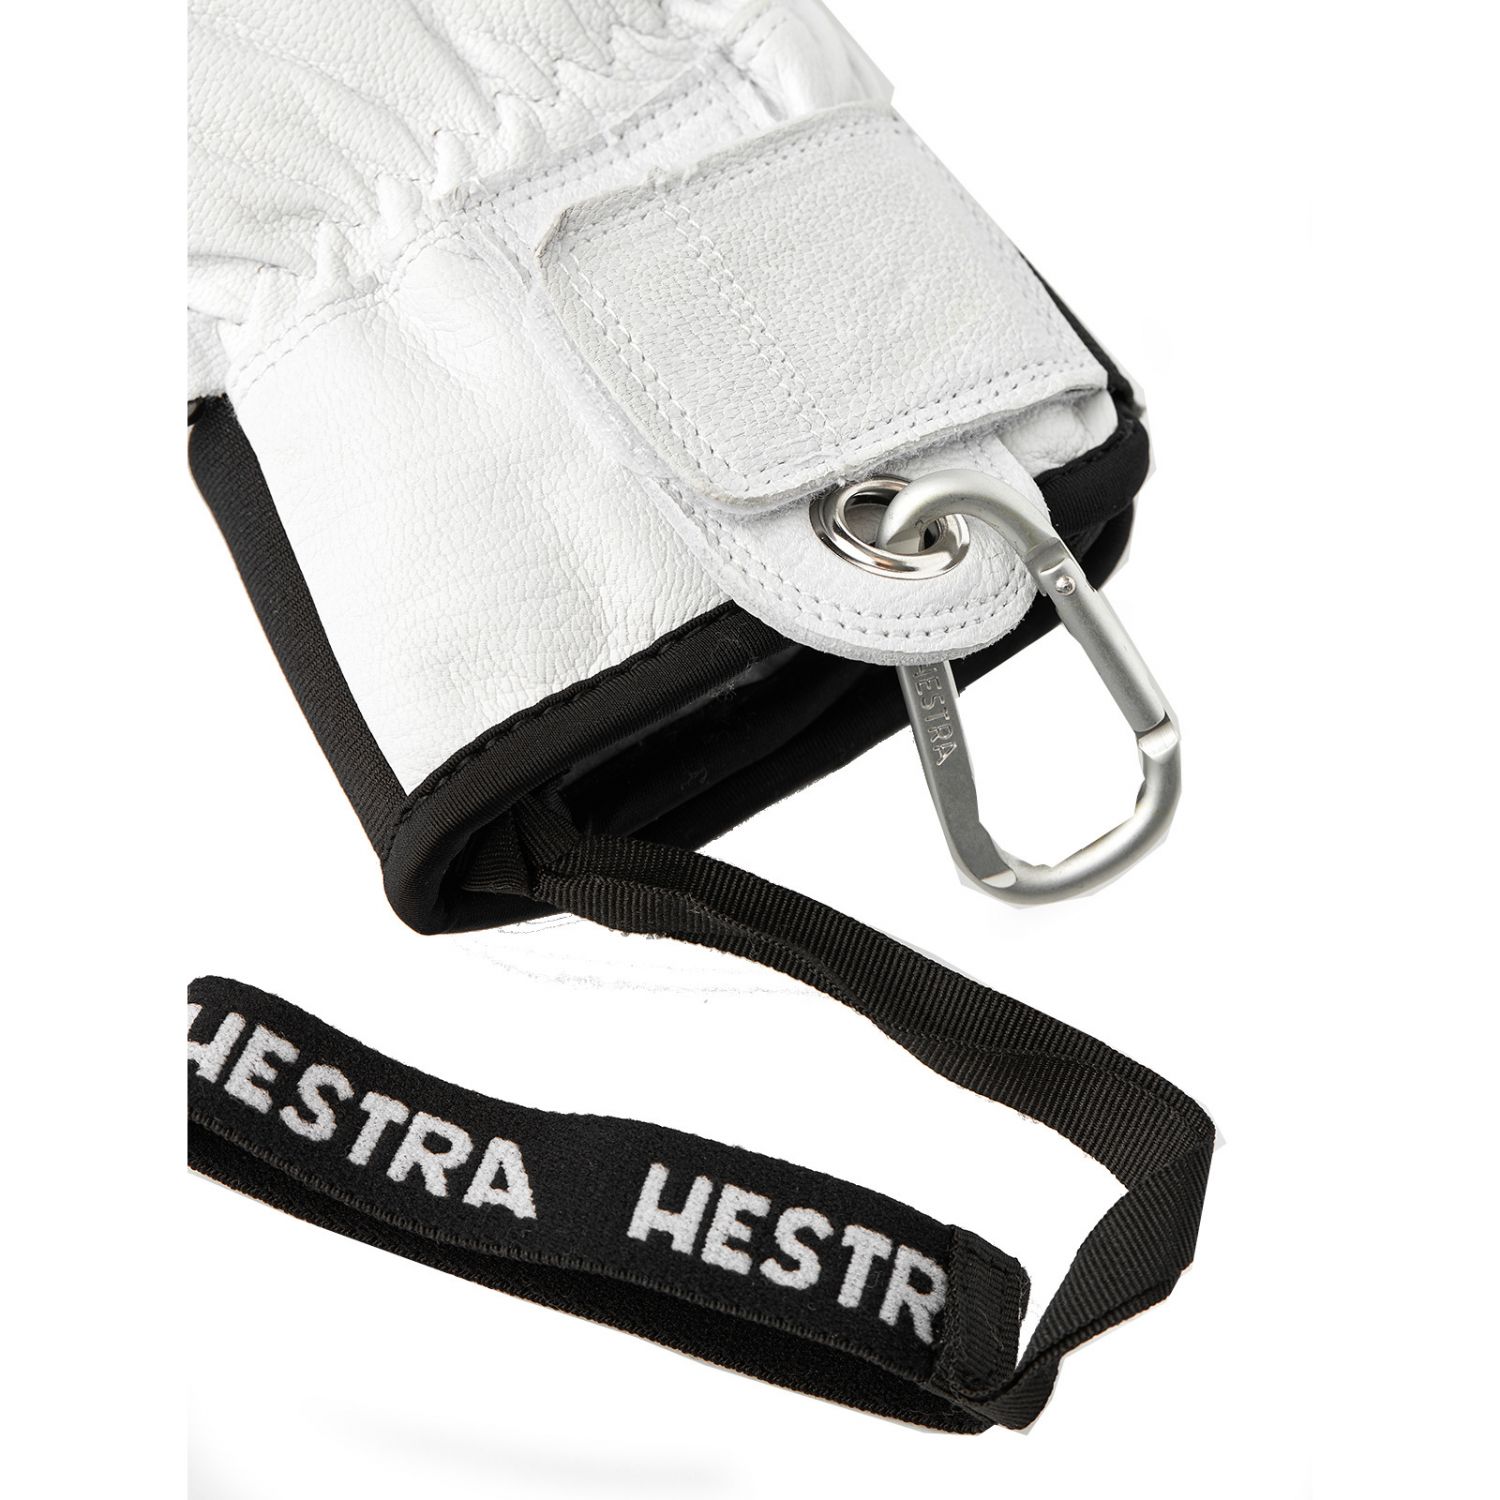 Hestra Army Leather Patrol 3-finger skihandsker, sort